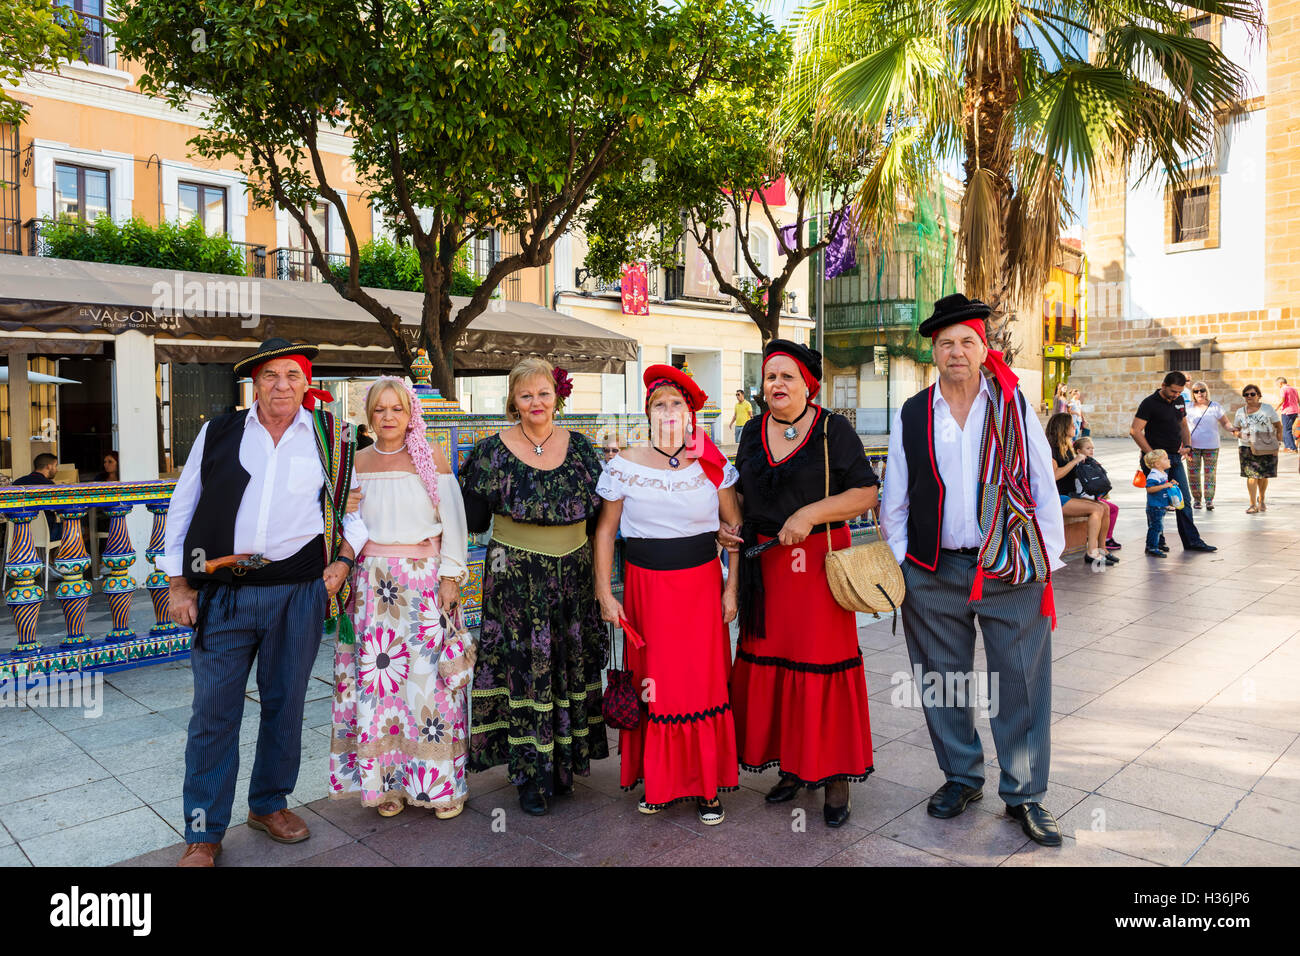 Gruppo di persone senior in tradizionale stile andaluso abbigliamento durante il festival folk presso il Plaza Alta in Algeciras, Spagna. Foto Stock